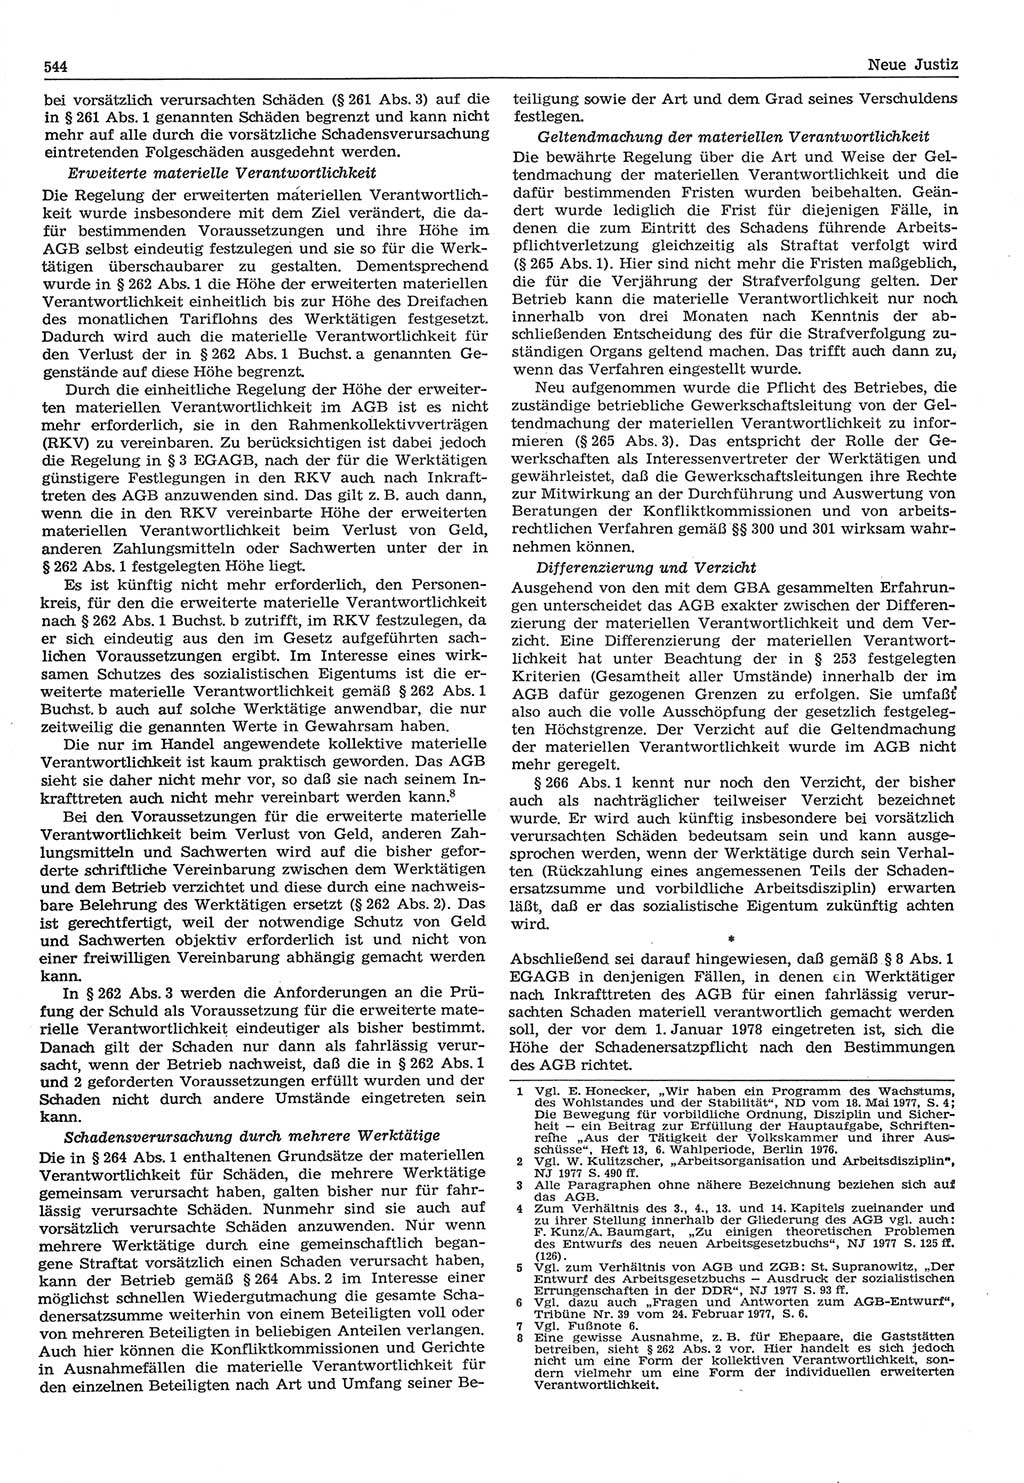 Neue Justiz (NJ), Zeitschrift für Recht und Rechtswissenschaft-Zeitschrift, sozialistisches Recht und Gesetzlichkeit, 31. Jahrgang 1977, Seite 544 (NJ DDR 1977, S. 544)